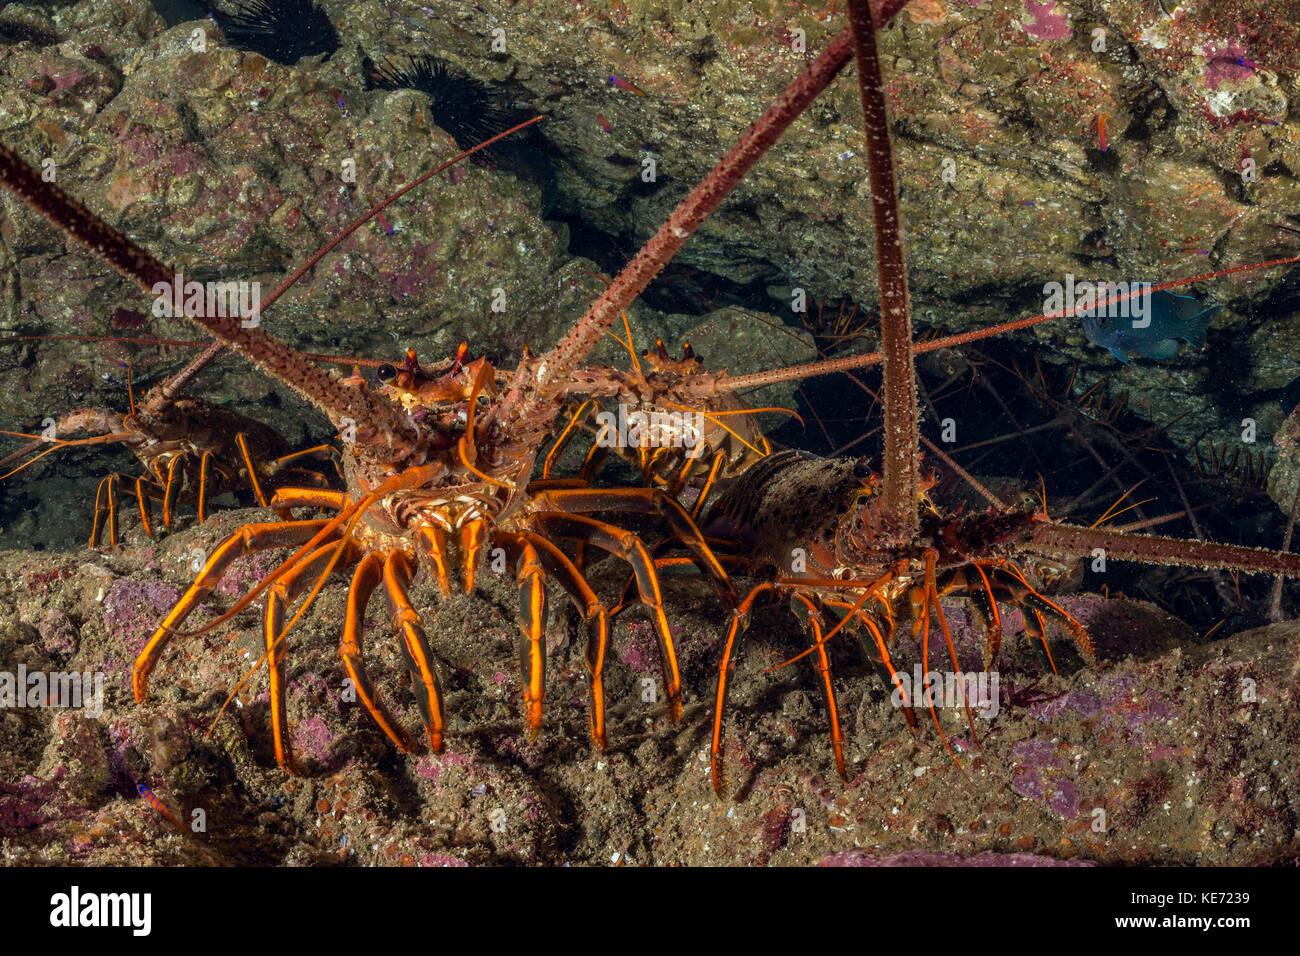 California aragosta, panulirus interruptus, Isola Catalina, california, Stati Uniti d'America Foto Stock